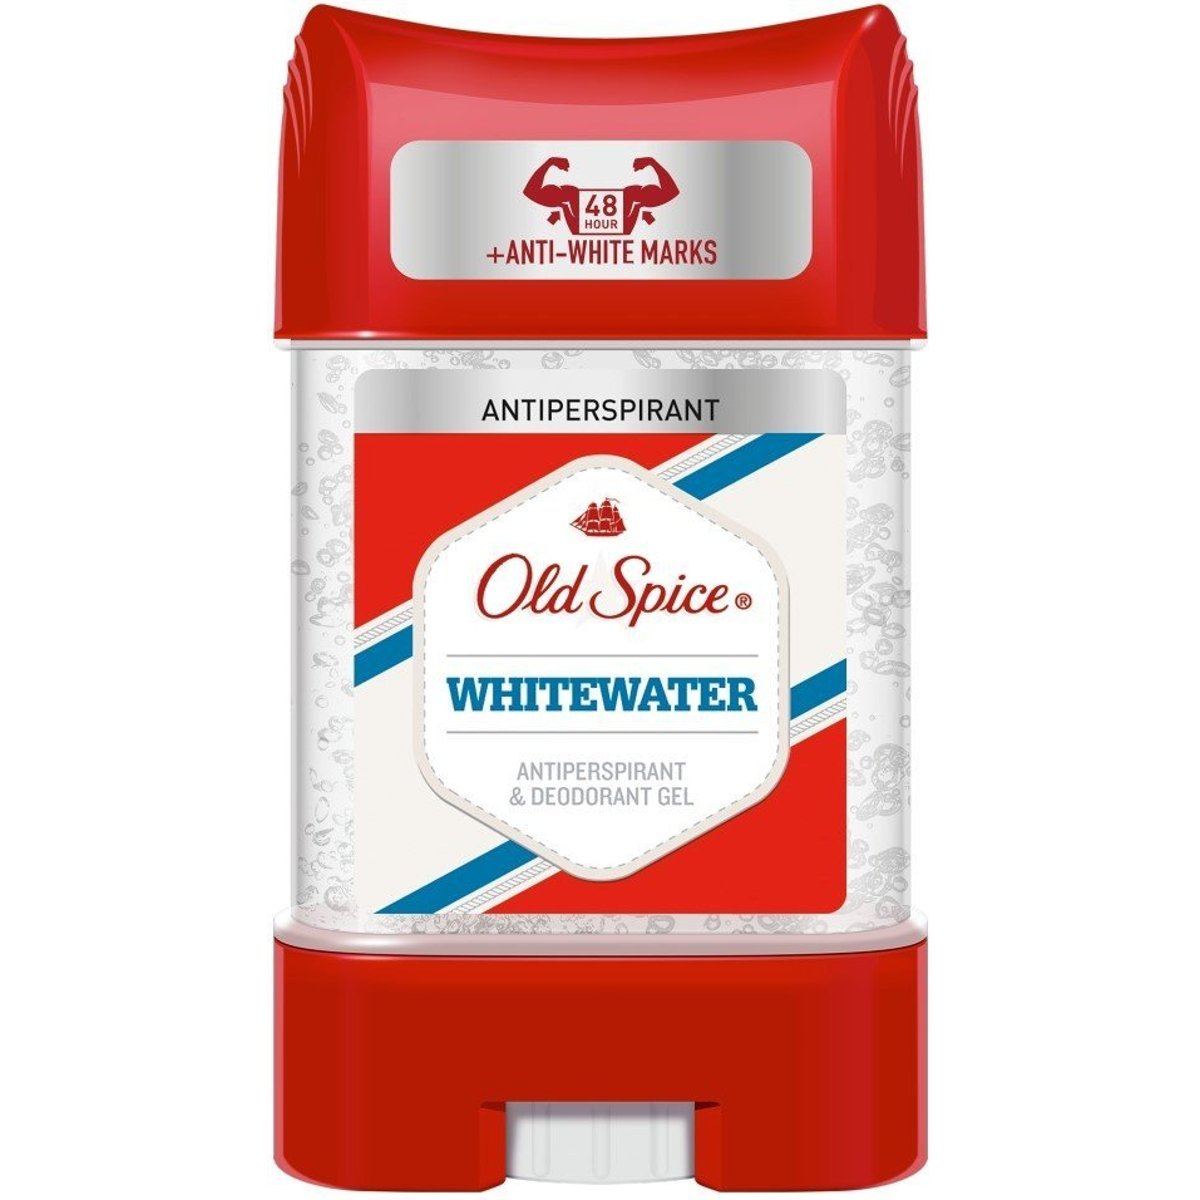 Old Spice Whitewater gelový antiperspirant pro muže